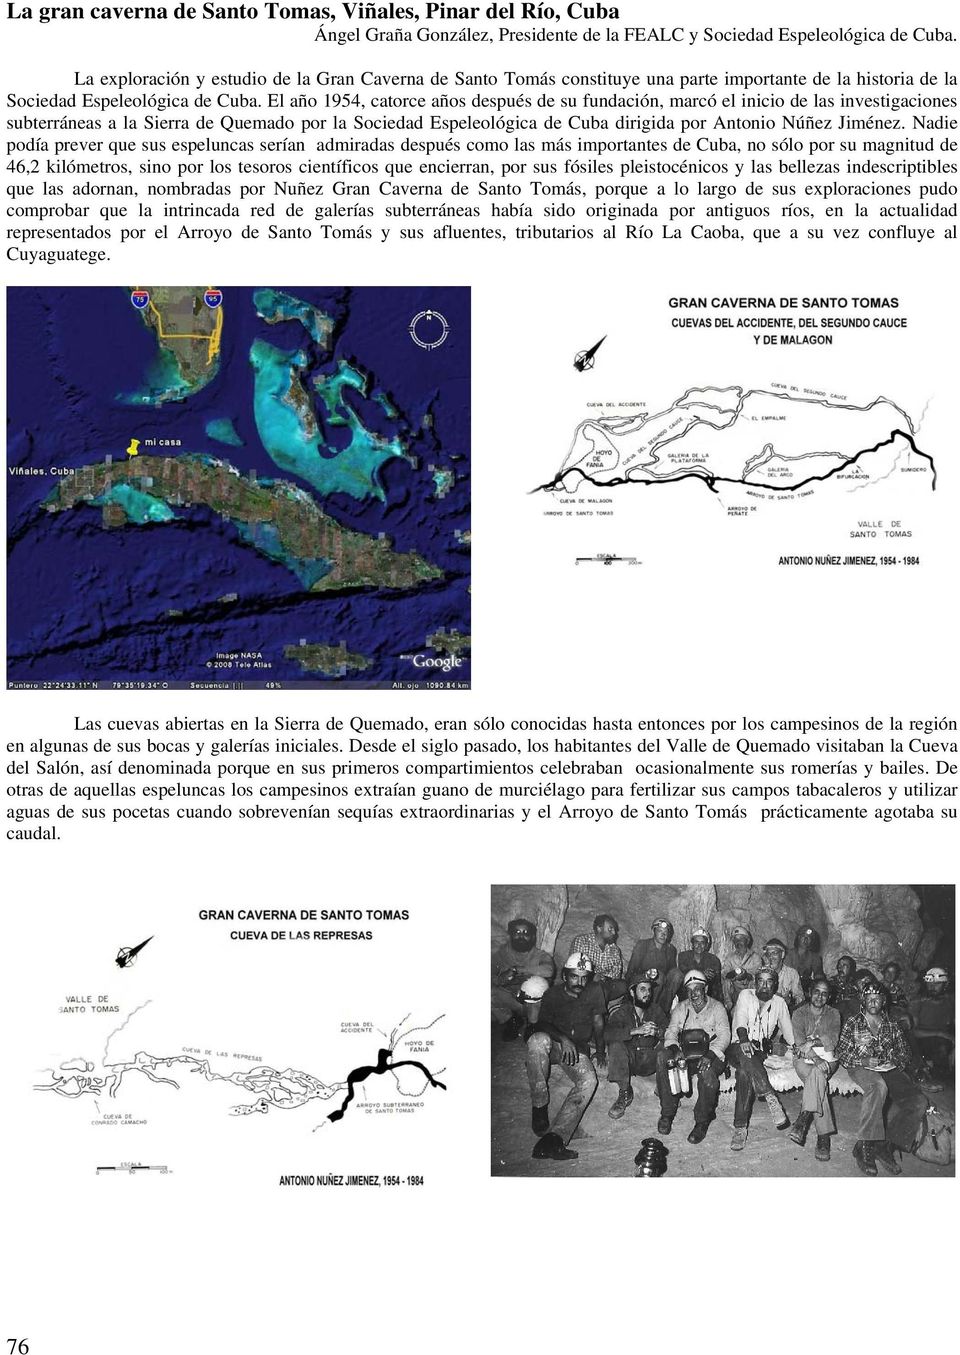 El año 1954, catorce años después de su fundación, marcó el inicio de las investigaciones subterráneas a la Sierra de Quemado por la Sociedad Espeleológica de Cuba dirigida por Antonio Núñez Jiménez.